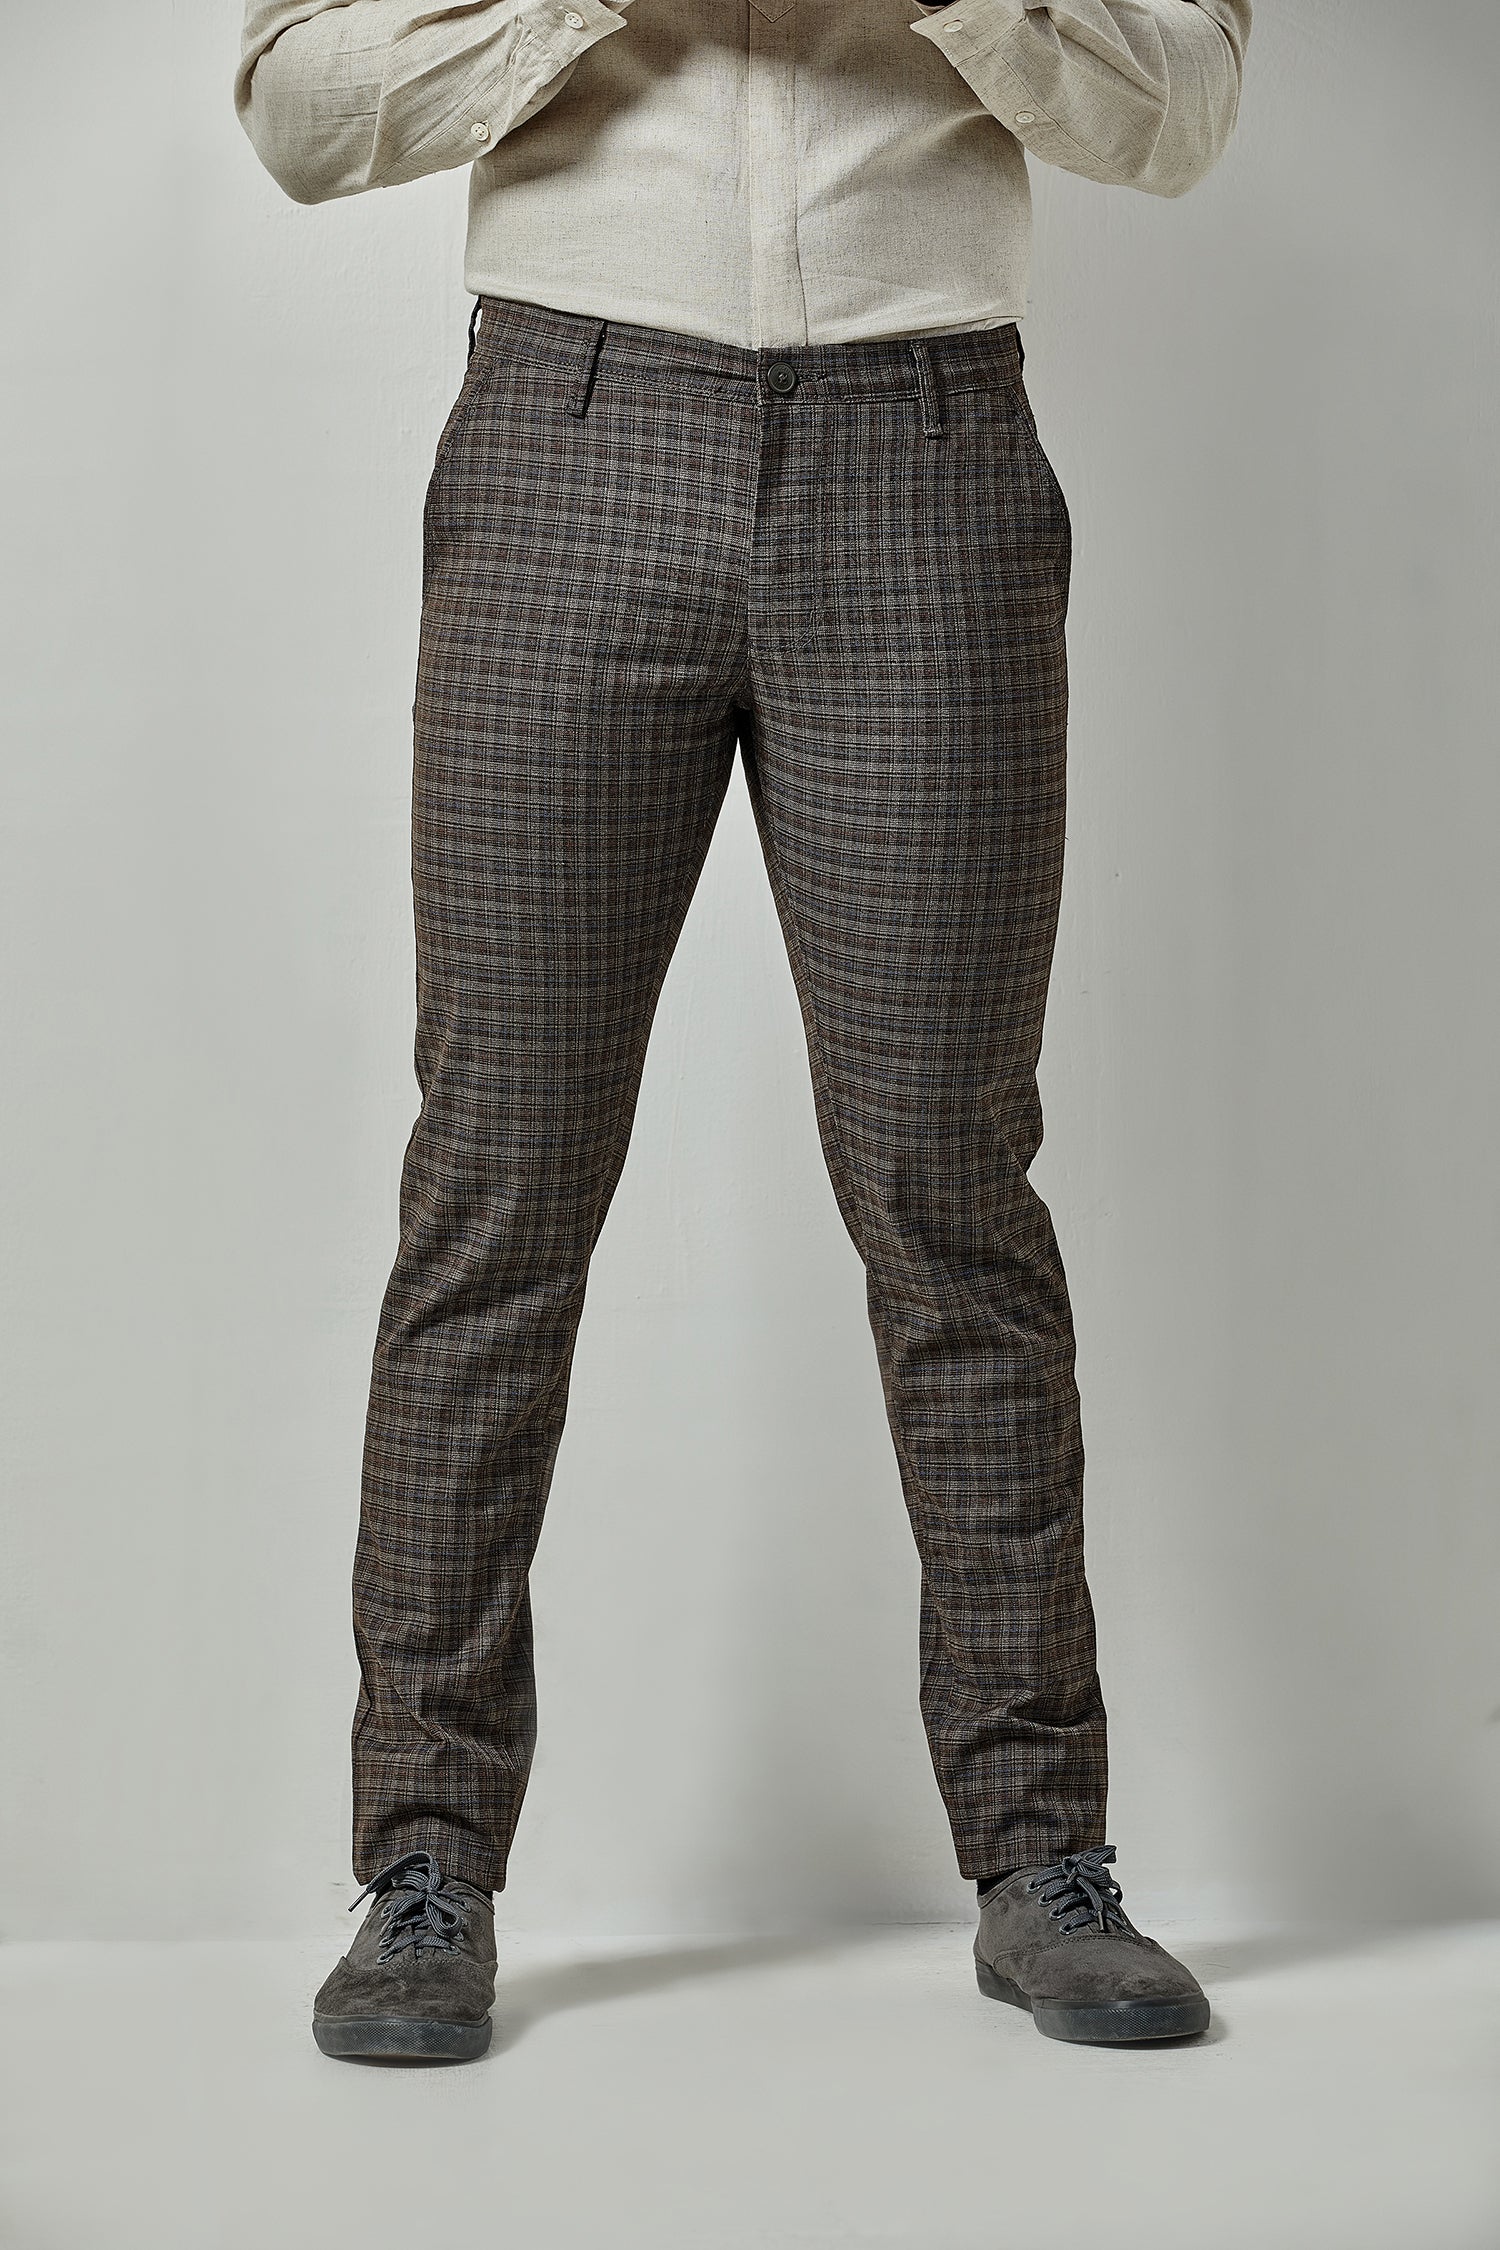 GAOSHI Men's Casual Fashion Button Zipper Plaid Trousers Men's Chino Trousers  Checkered Fabric Trousers Long Regular Sweatpants (Color : Blue, Size : S)  : Amazon.co.uk: Fashion